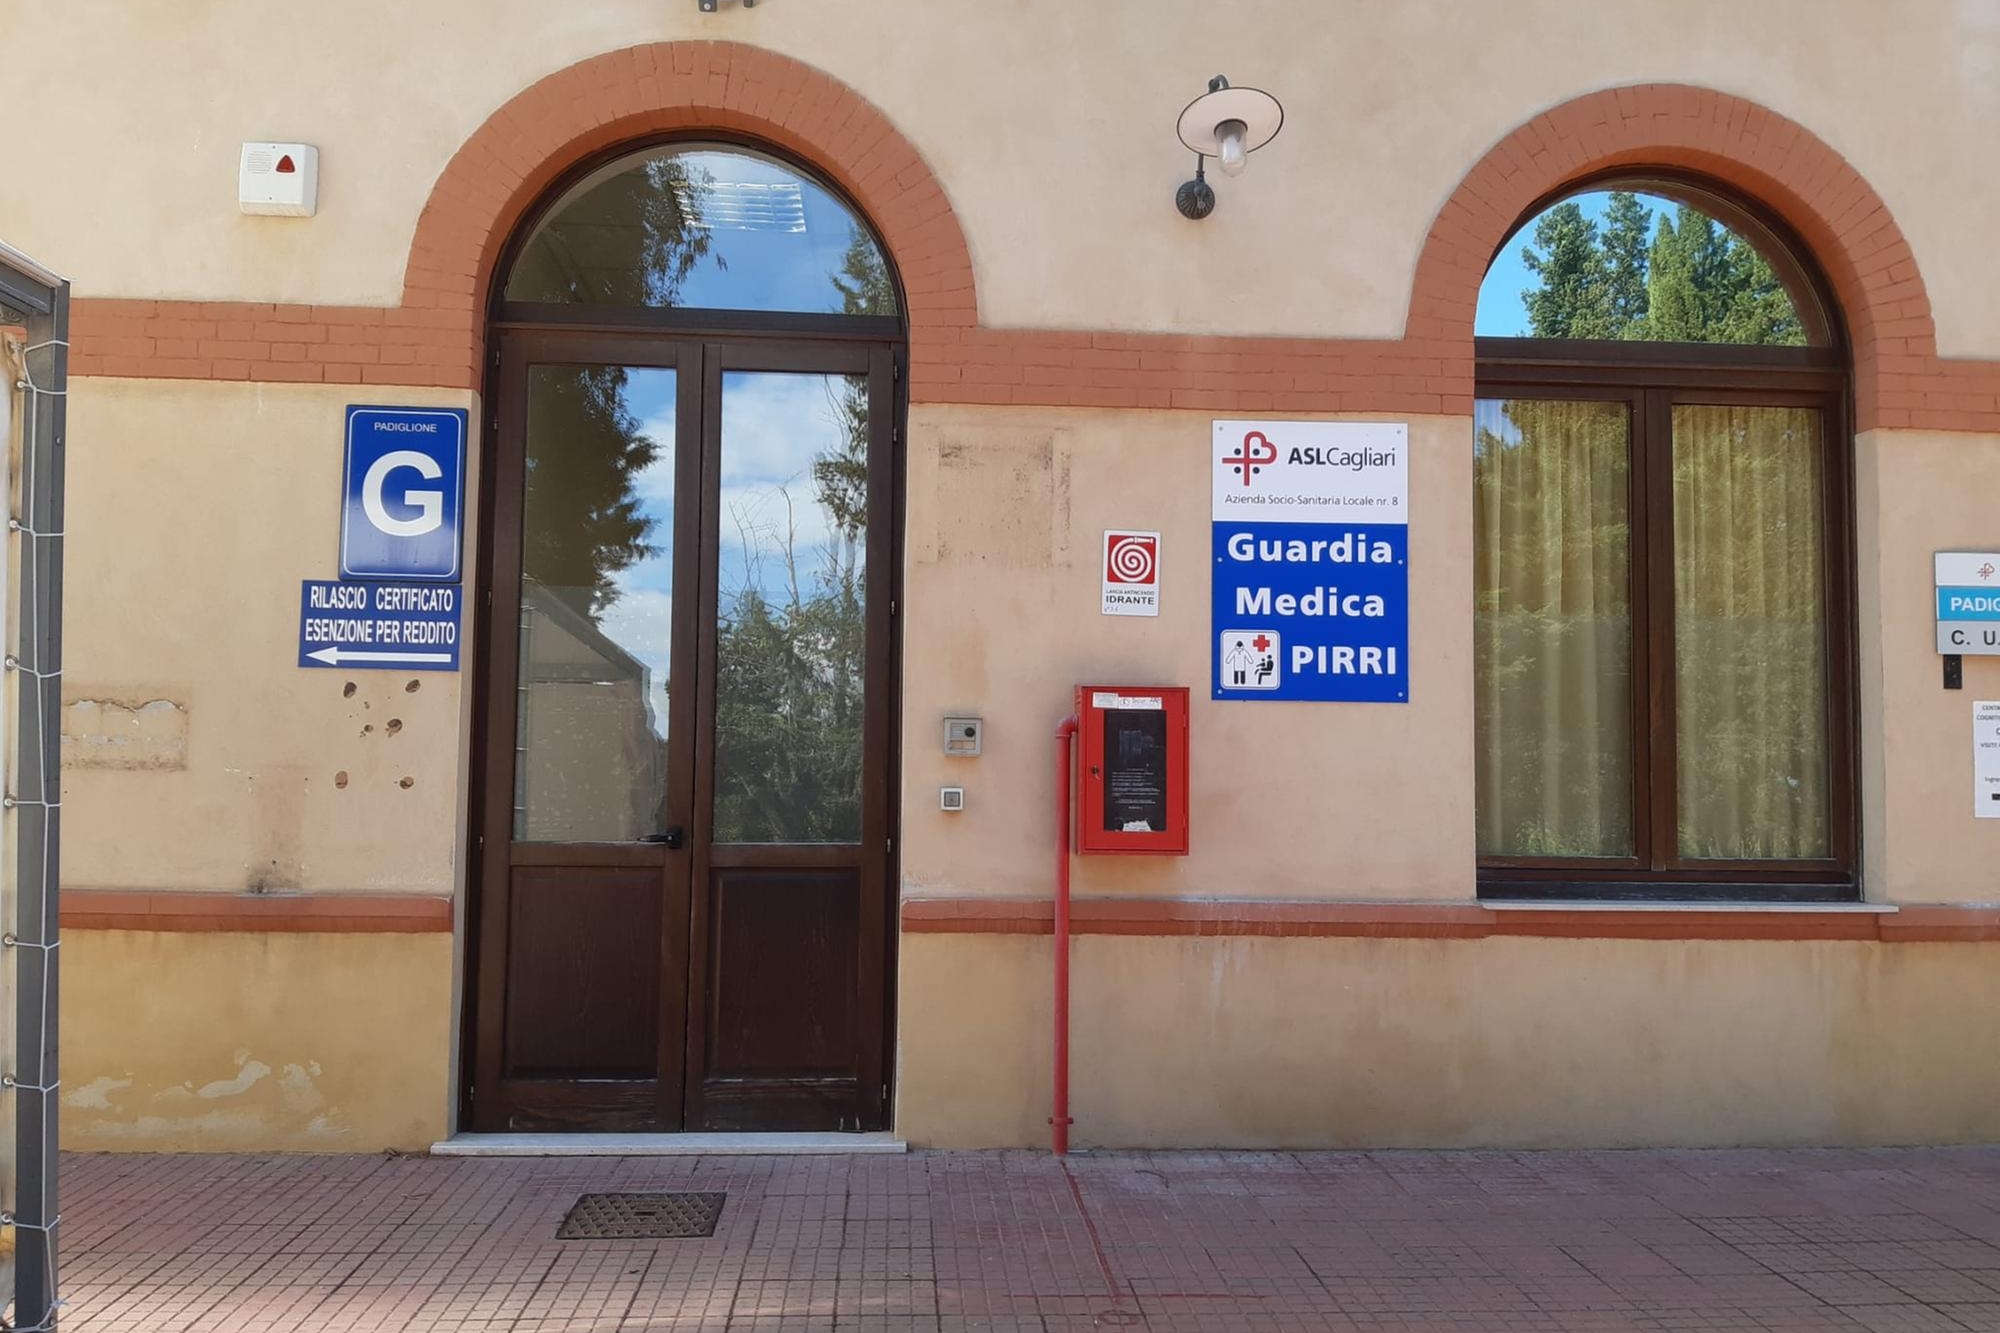 La nuova sede della Guardia medica (Foto Asl Cagliari)